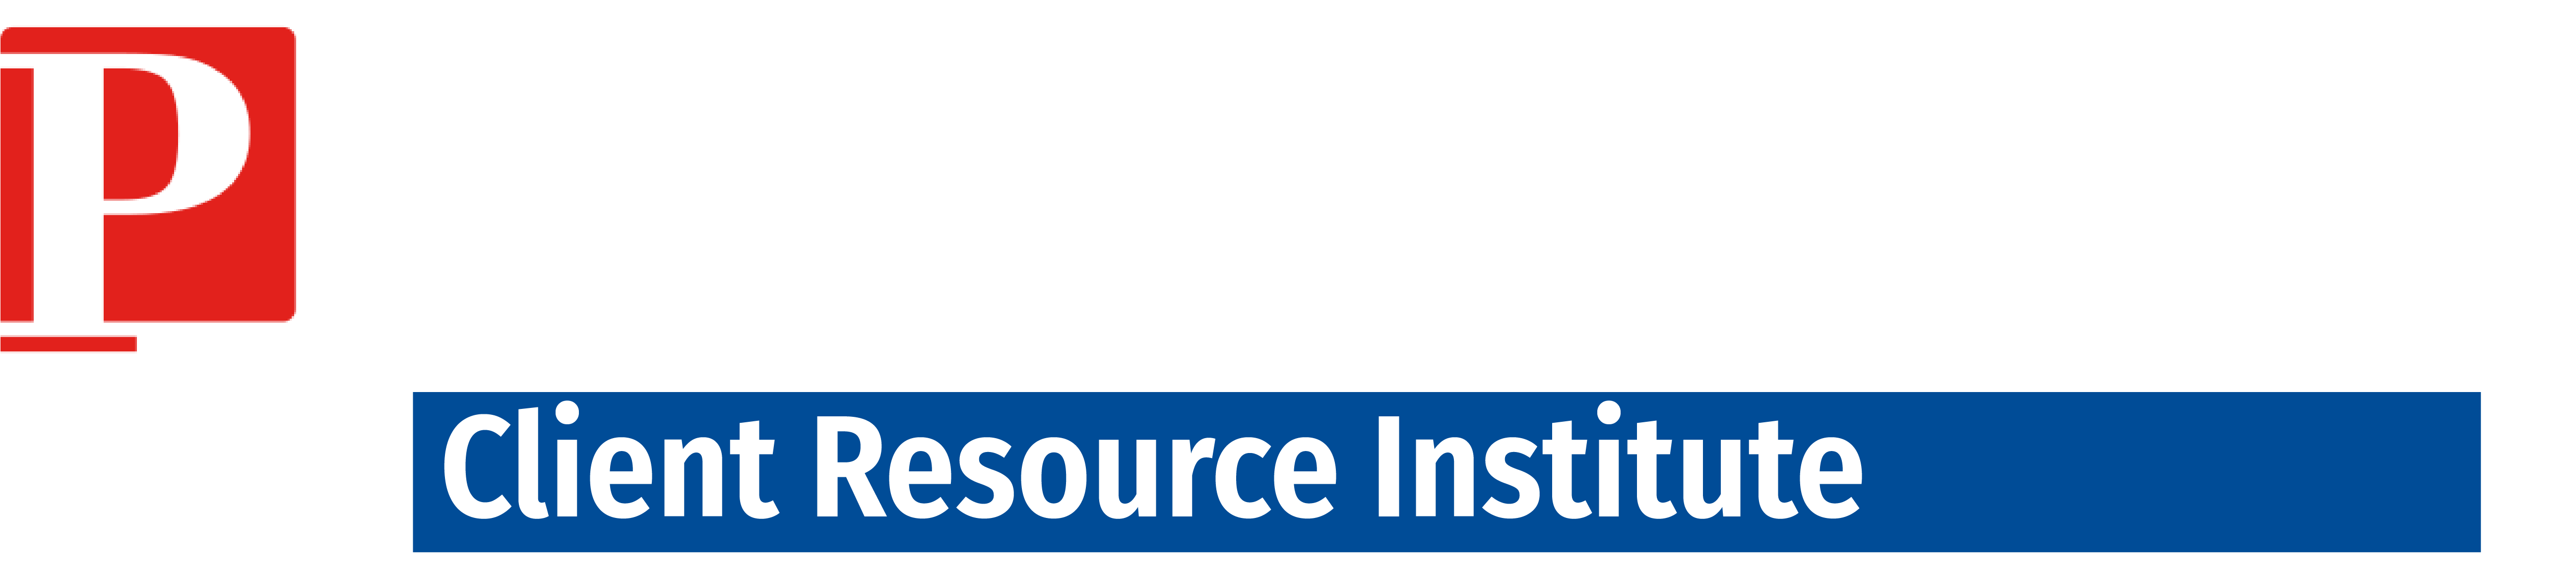 Primerus Client Resource Institute Logo - White